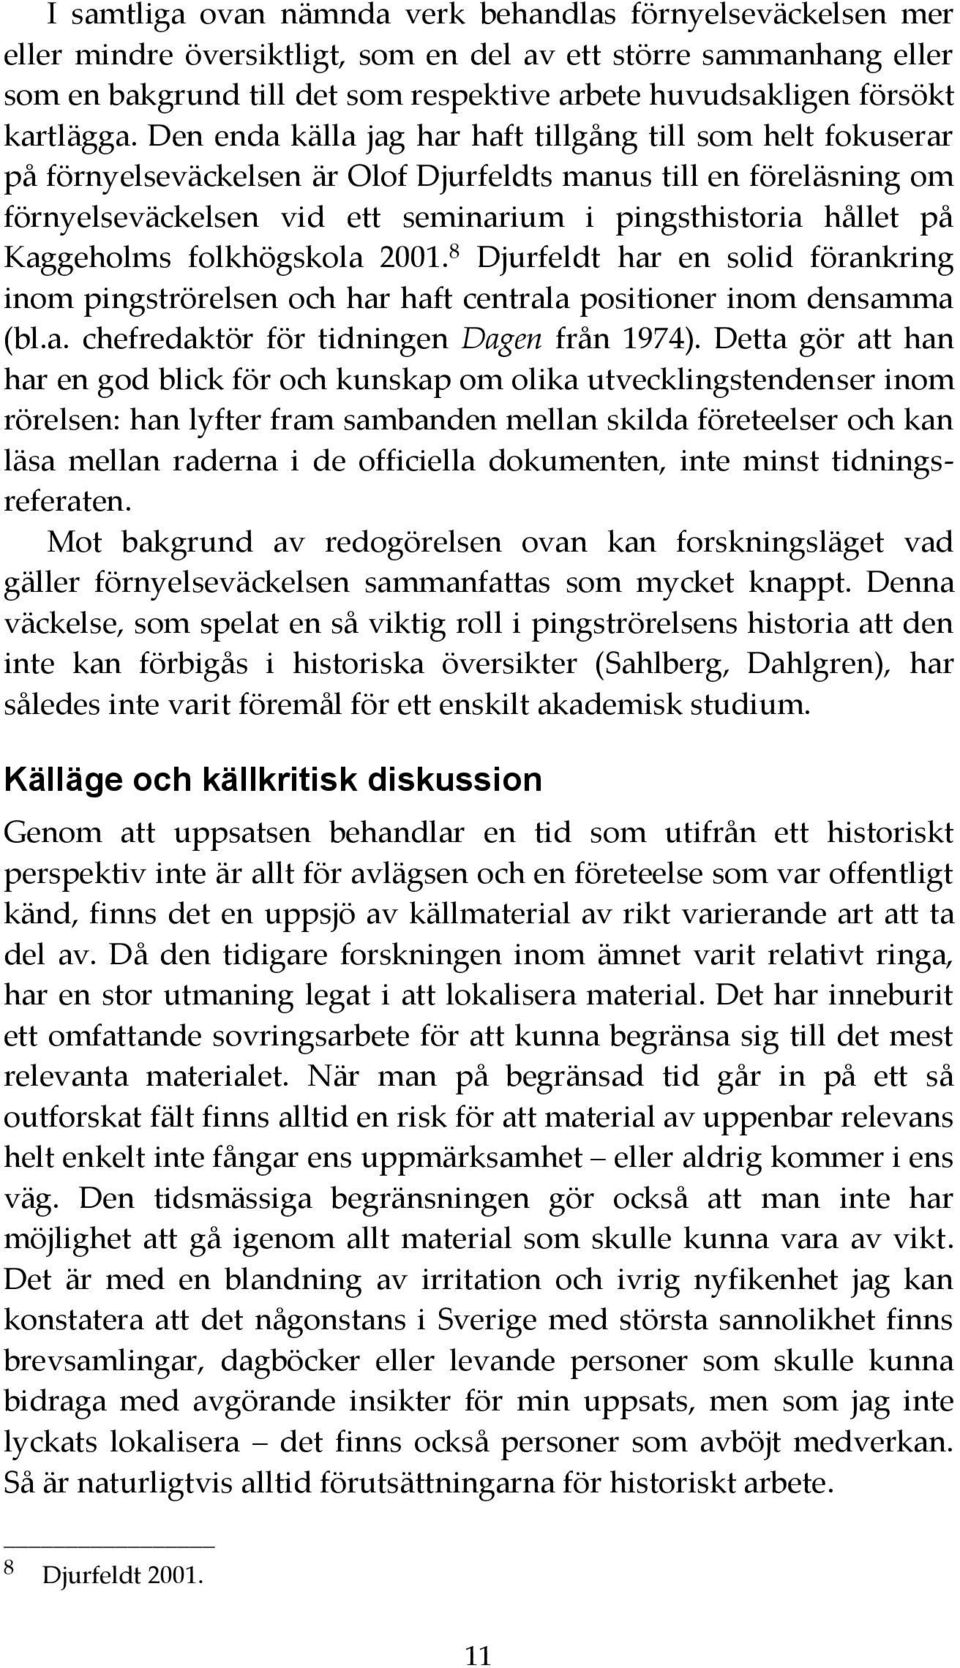 Den enda källa jag har haft tillgång till som helt fokuserar på förnyelseväckelsen är Olof Djurfeldts manus till en föreläsning om förnyelseväckelsen vid ett seminarium i pingsthistoria hållet på